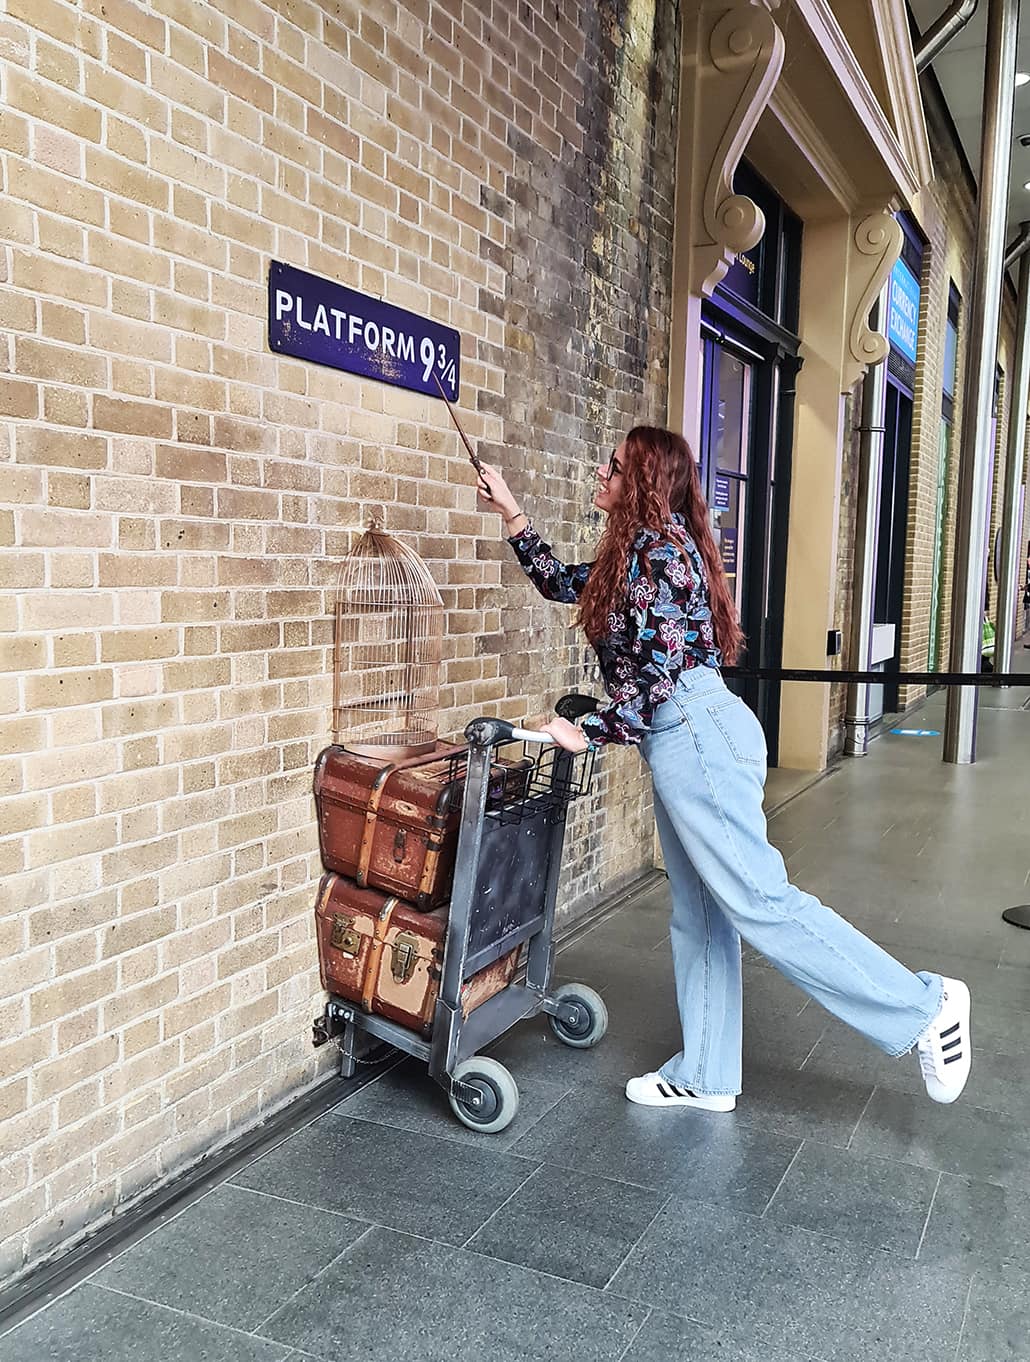 Uno dei luoghi di Harry Potter a Londra che non può mancare, ovvero la stazione di King's Cross. In foto si vede Carlotta con una bacchetta in una mano e con l'altra tiene un carrello con delle valigie attaccato ad un muro, dove c'è la scritta "Binario 9 e 3/4"